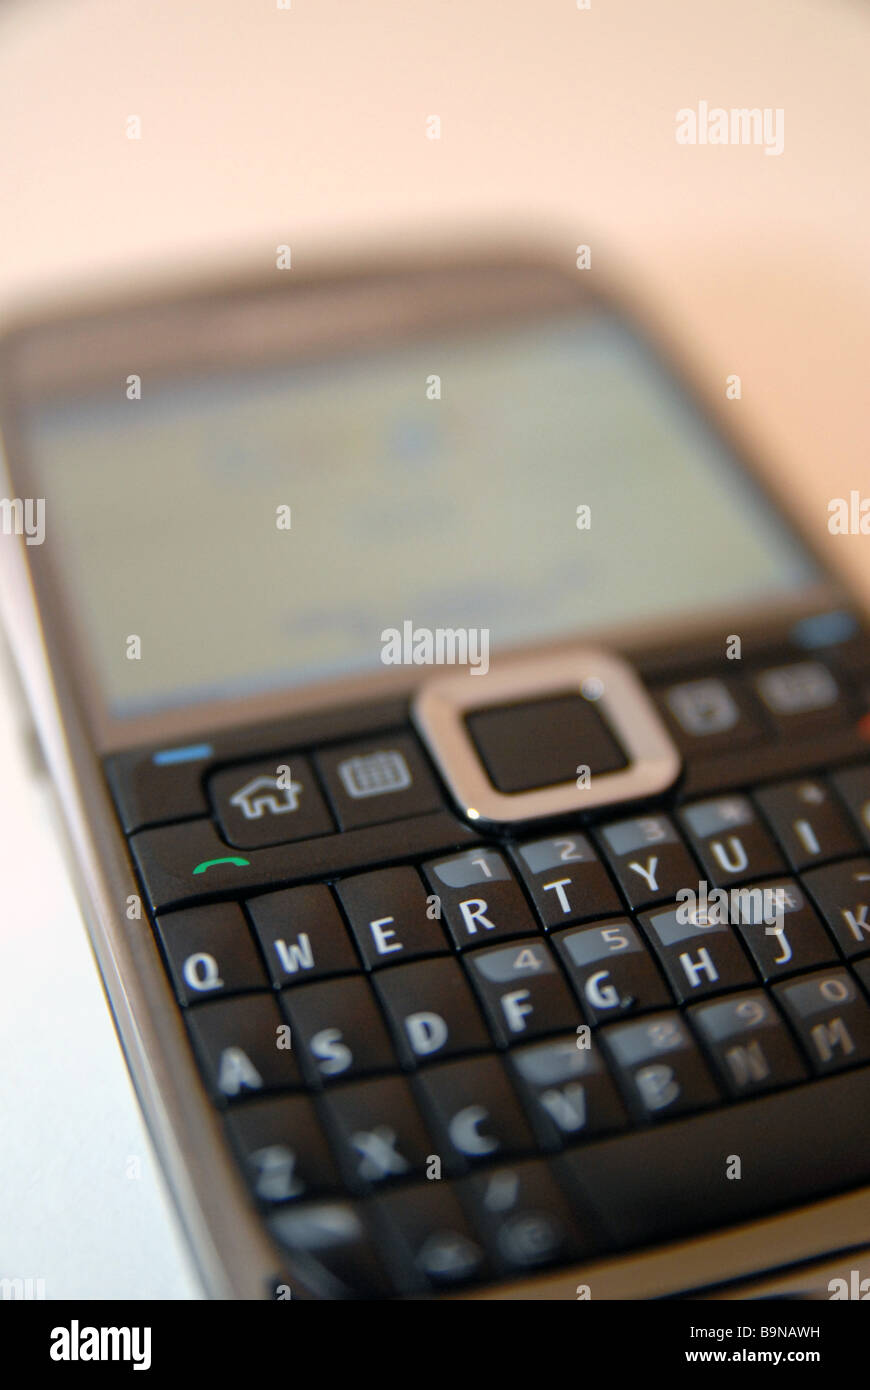 Un téléphone mobile Nokia/Appareil avec clavier AZERTY complet Photo Stock  - Alamy